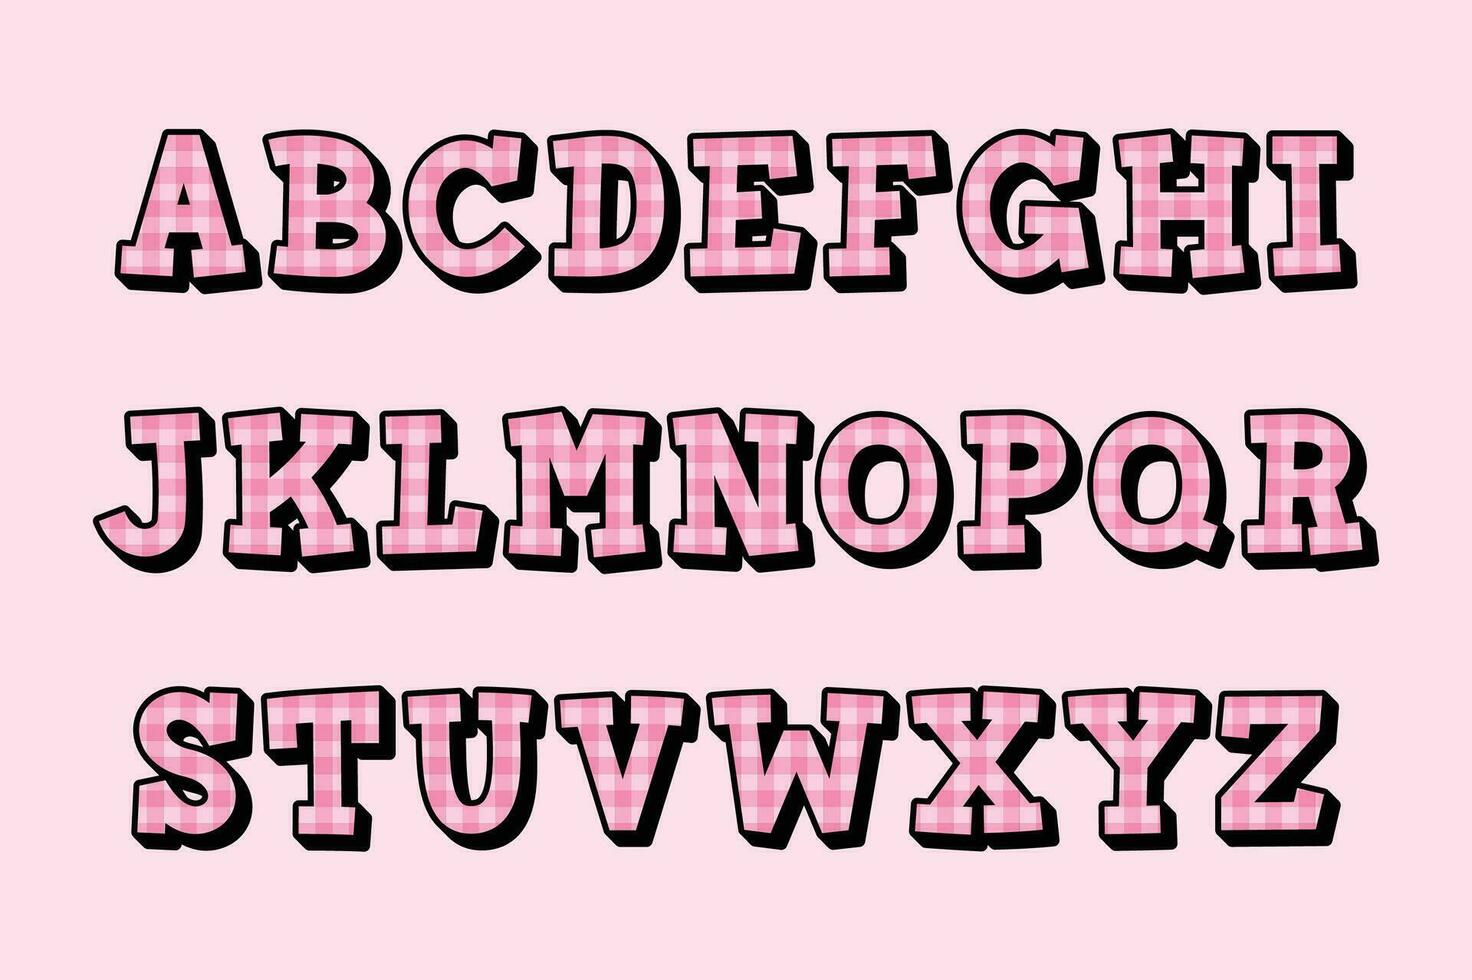 polyvalent collection de rose plaid alphabet des lettres pour divers les usages vecteur